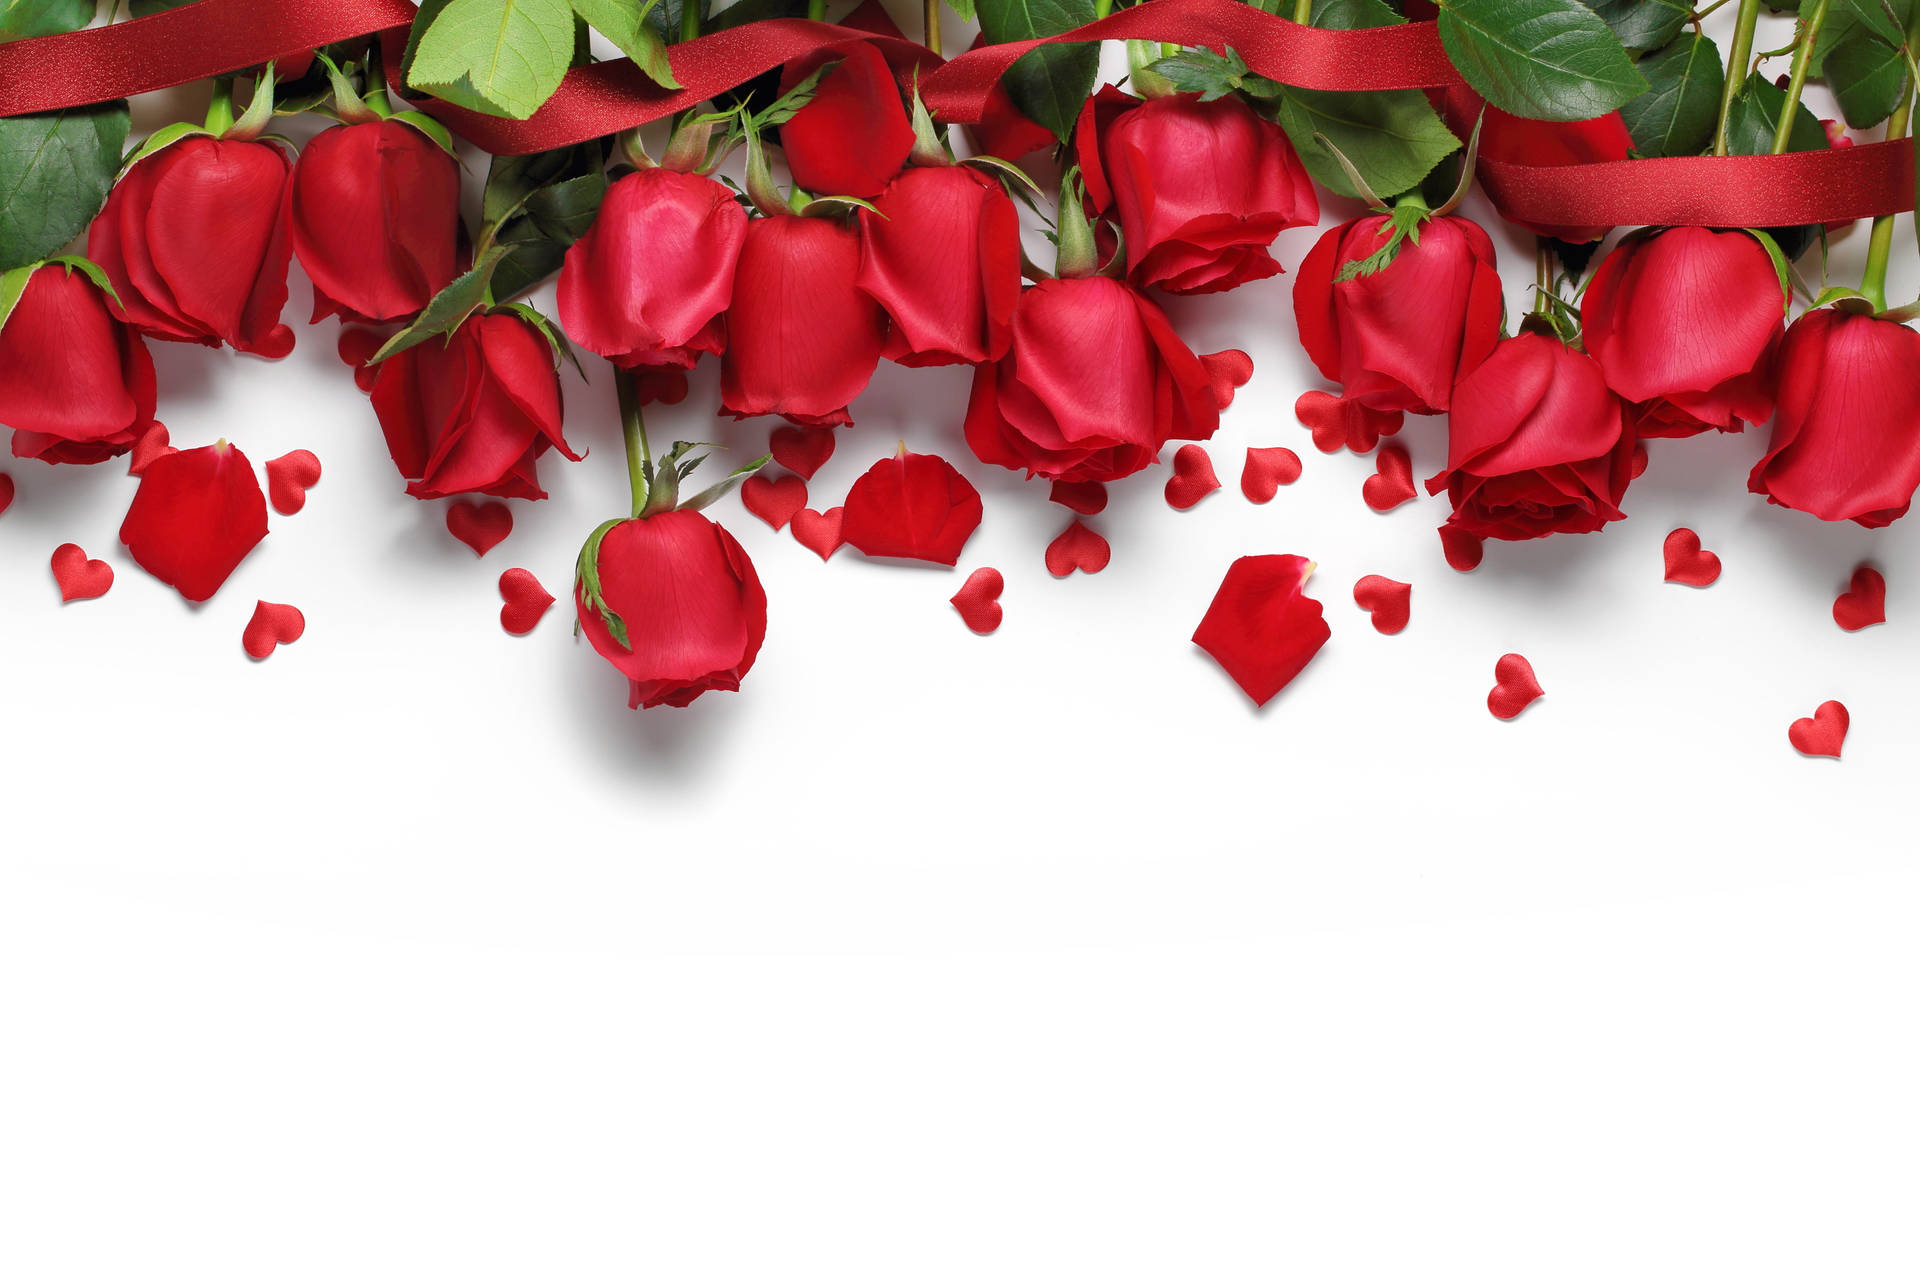 Red Roses Heart Petals Wallpaper